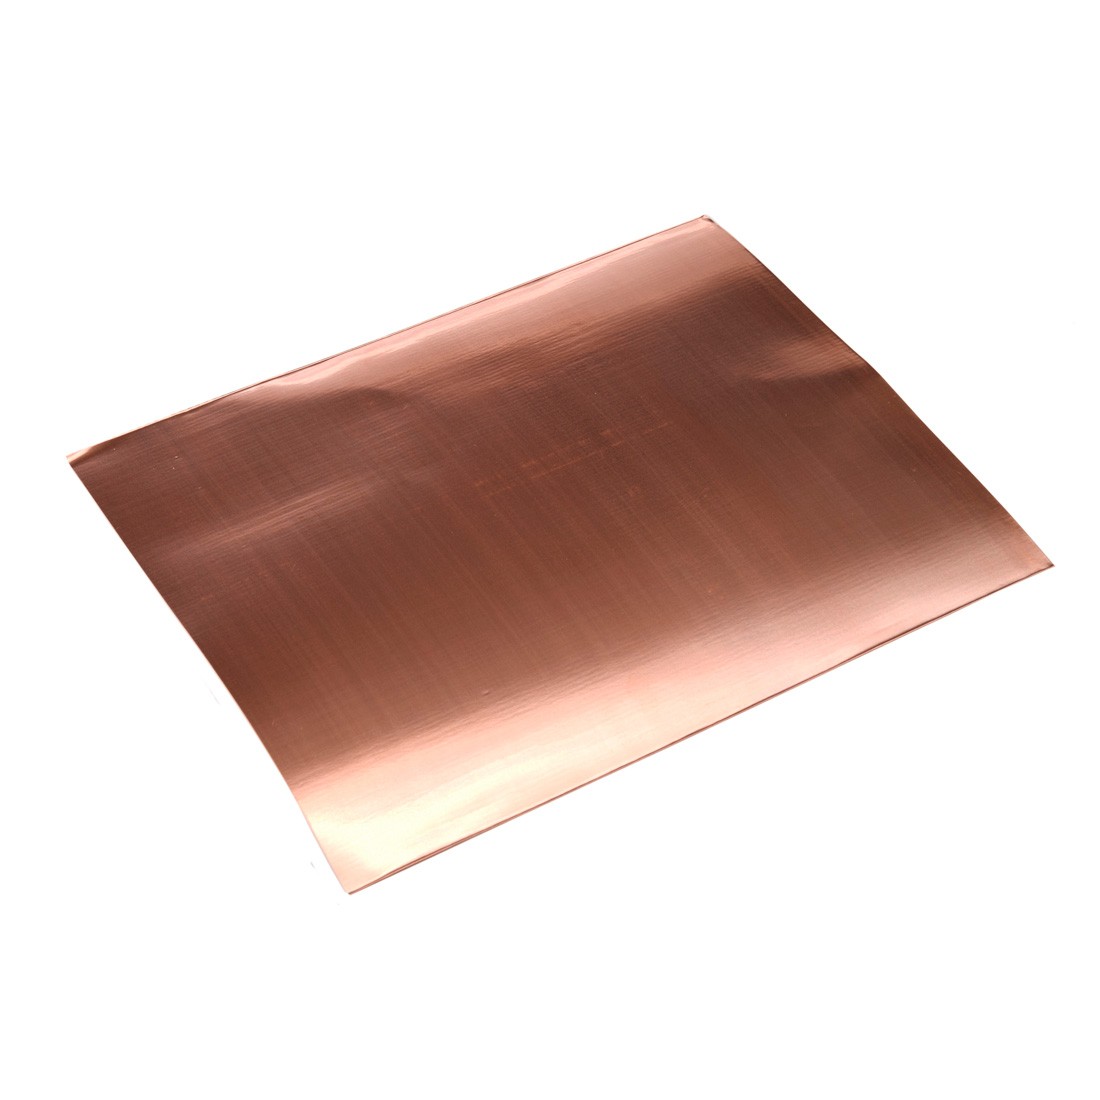 Copper sheets 200x250mm